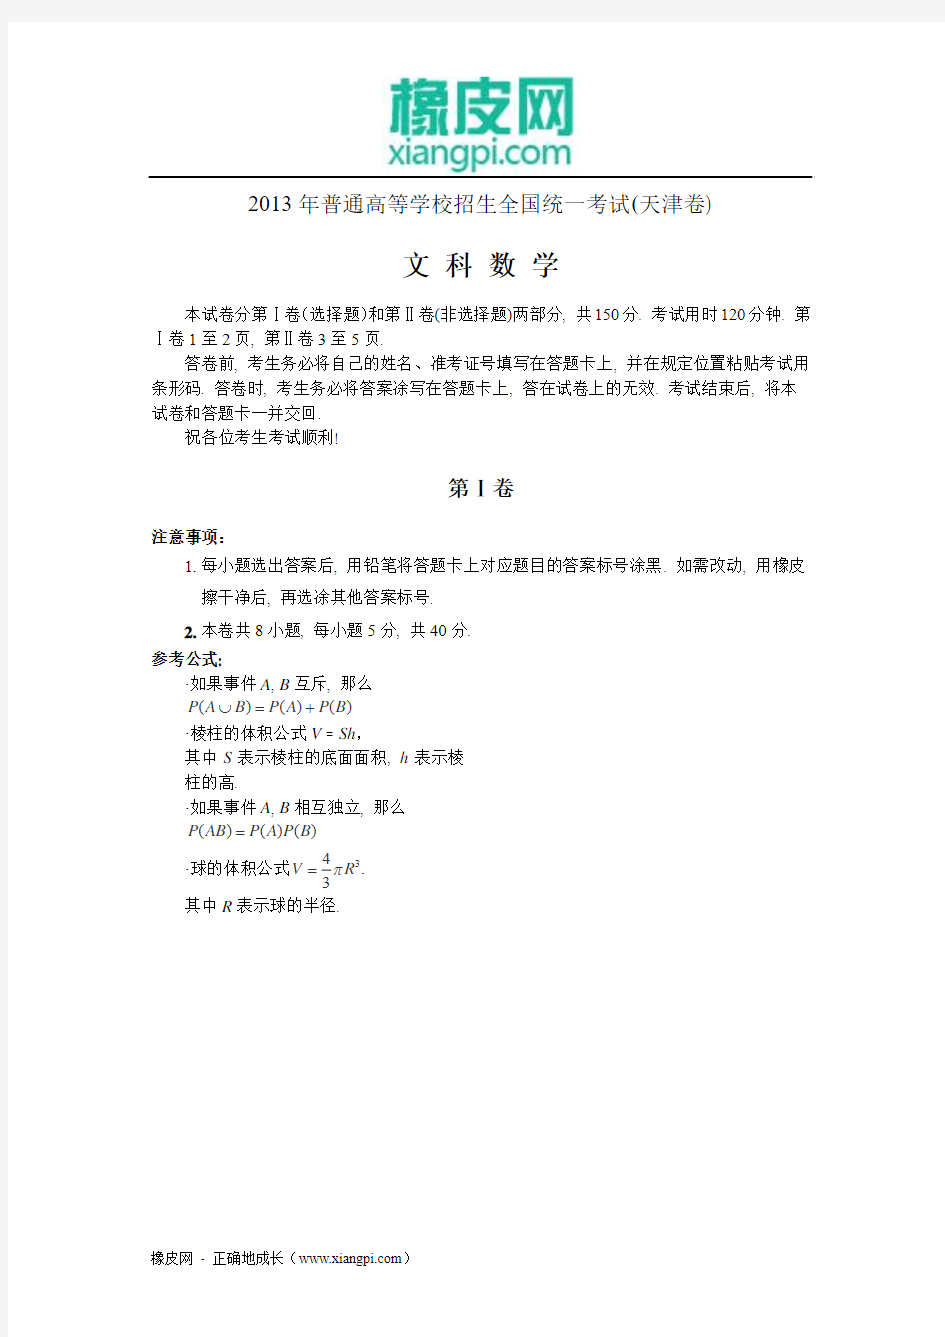 2013年高考真题——文科数学(天津卷)解析版 Word版含答案